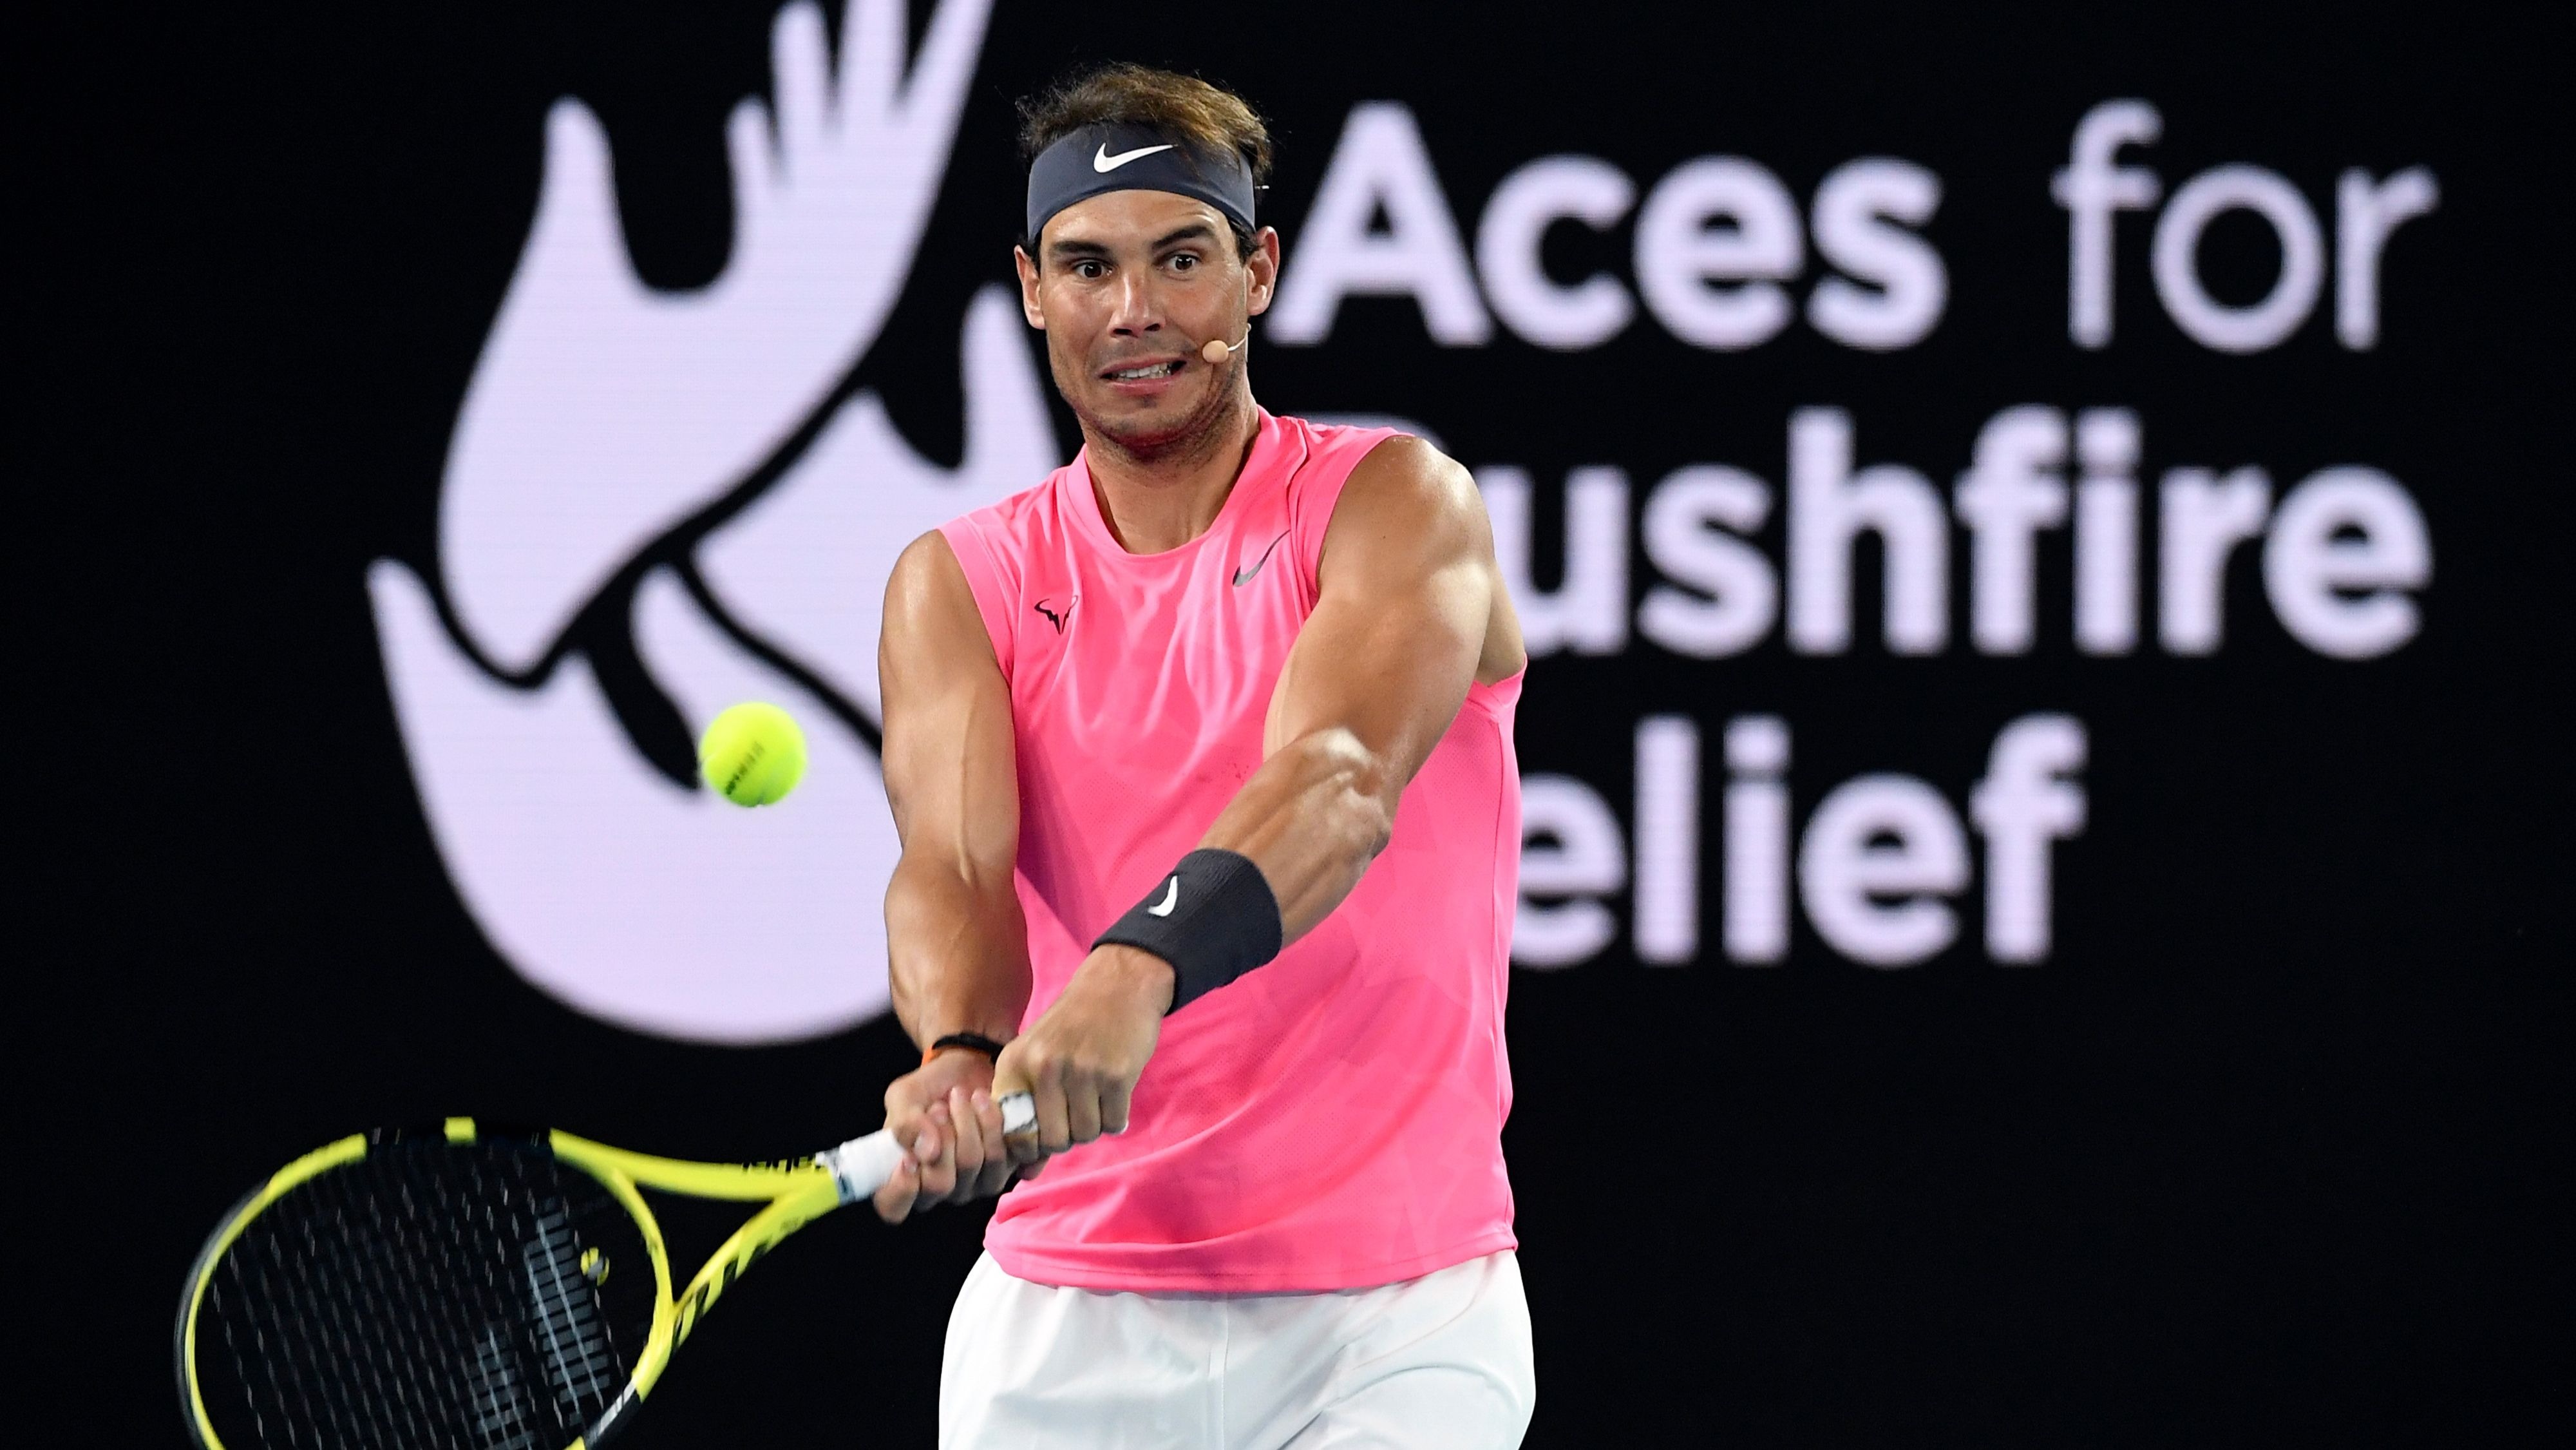 Rafa Nadal takes part in a bushfire relief fundraiser ahead of the Australian Open